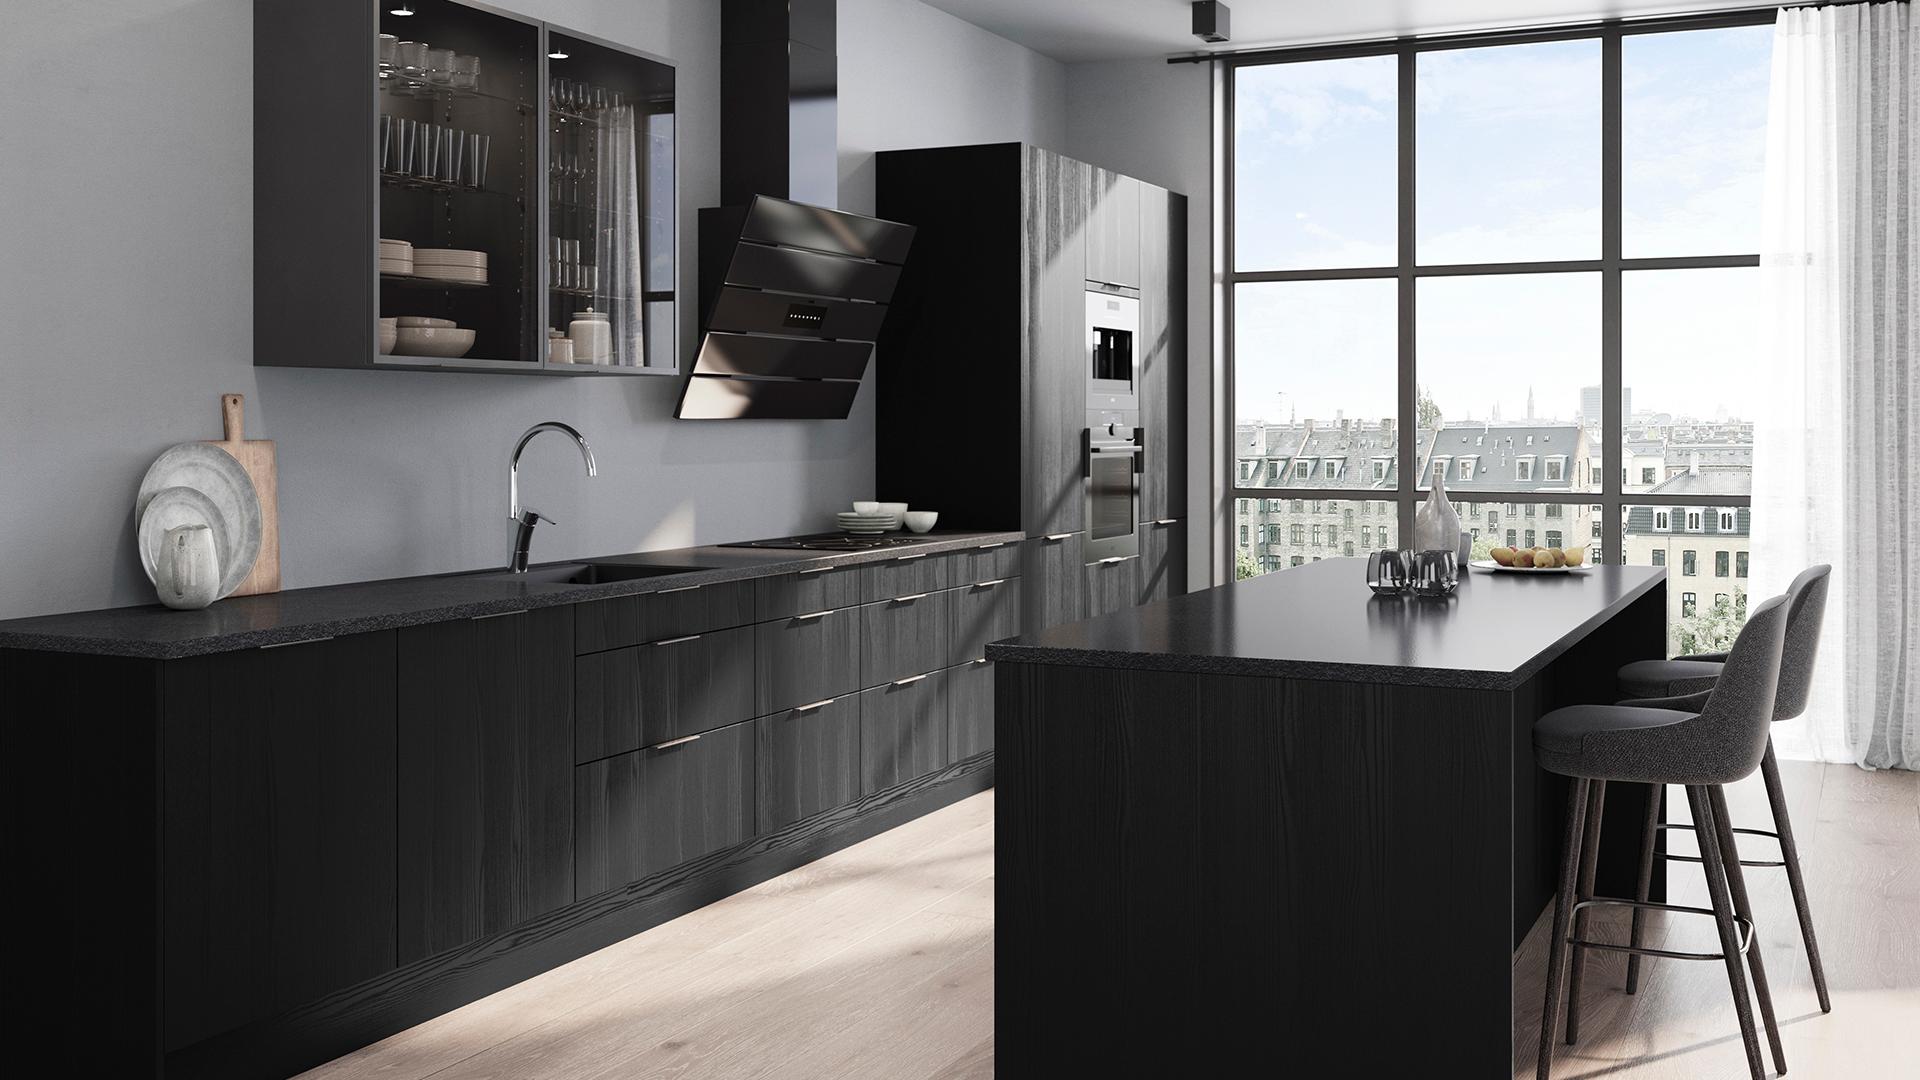 musta keittiökokonaisuus valkoisessa keittiössä. keittiön suuresta ikkunasta näkyy talojen kattoja